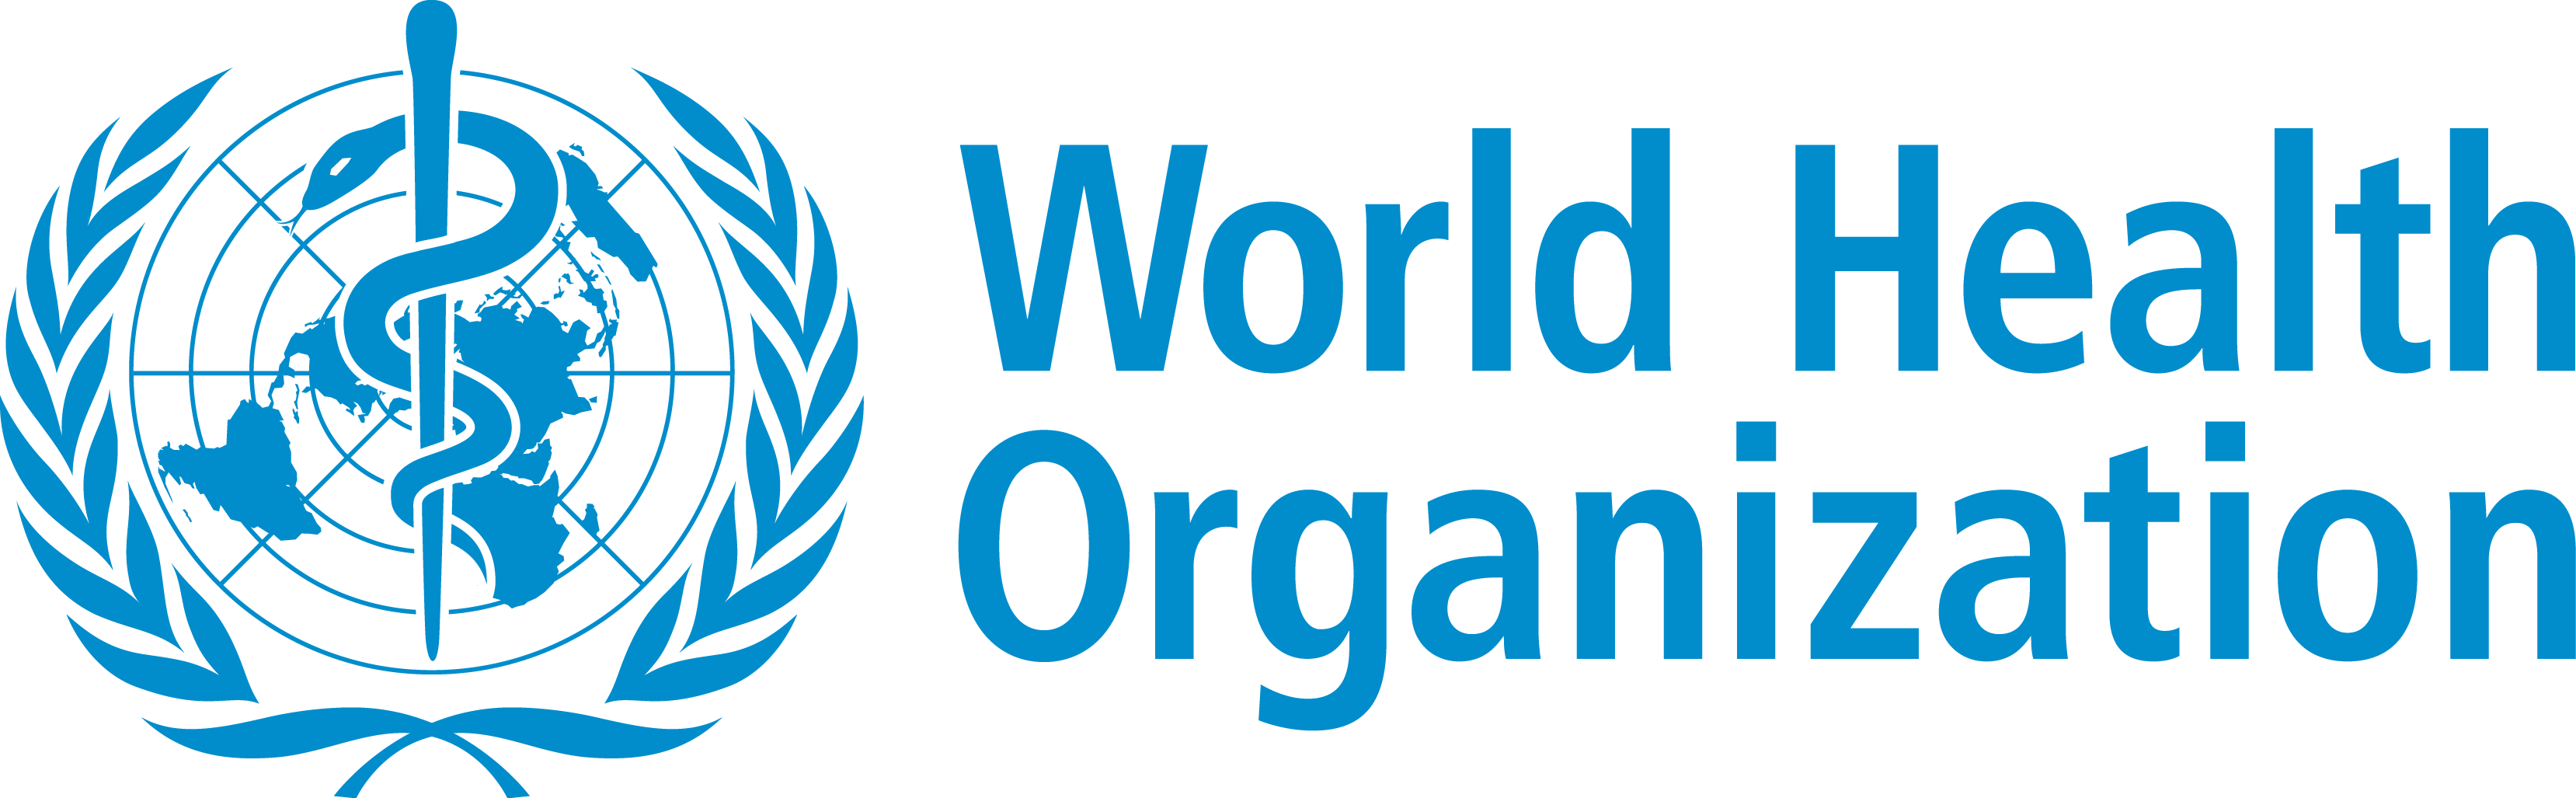 Organisation Mondiale de la Santé (Wordl Health Organization)